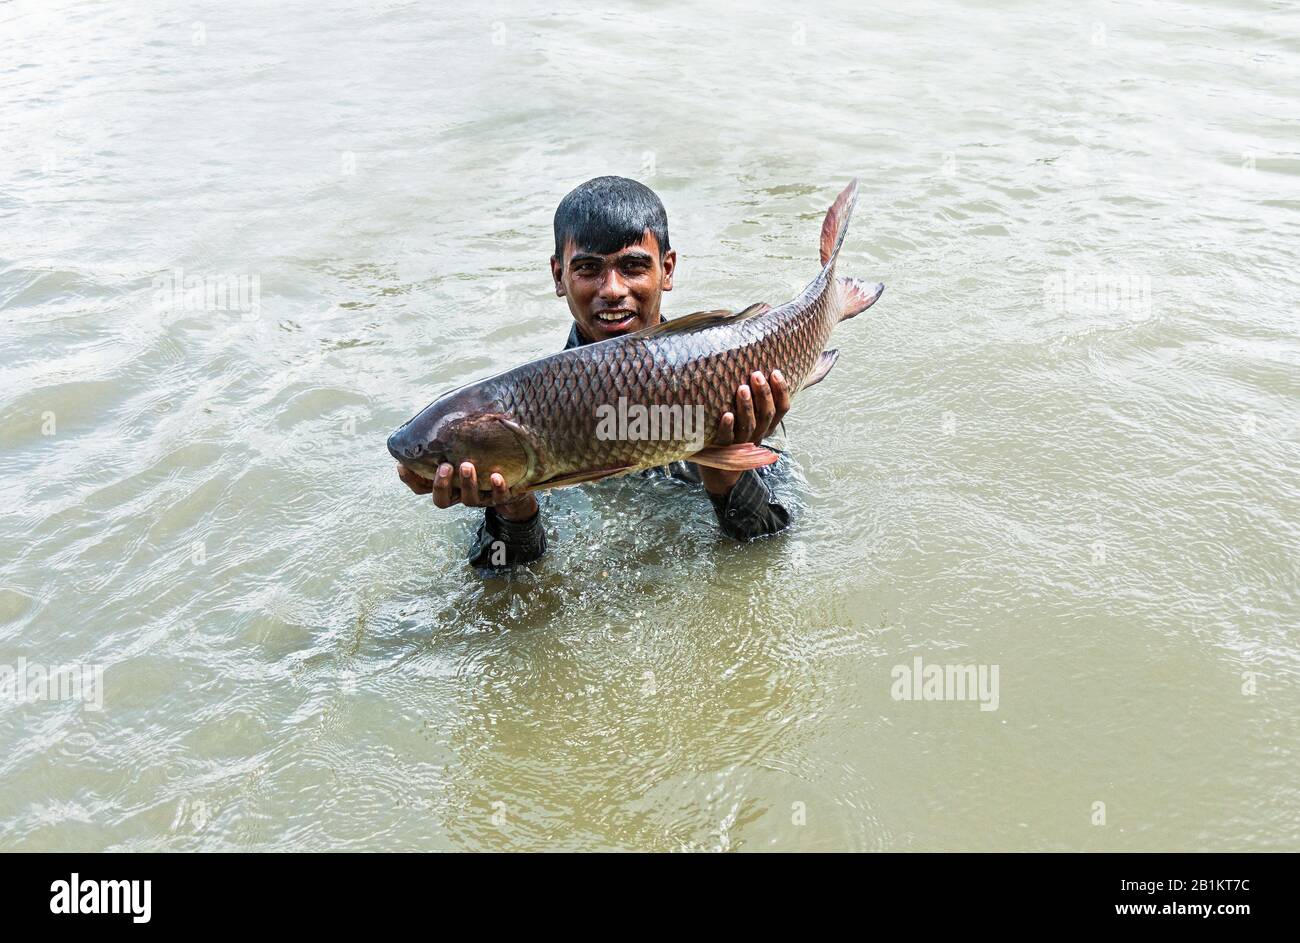 Fisch ist das wichtigste tierische Ausgangsprotein für bangladeschische Menschen. Sie hat auch einen guten wirtschaftlichen Wert in der Lebensmittelindustrie und der Lebensmittelsicherheit. Stockfoto